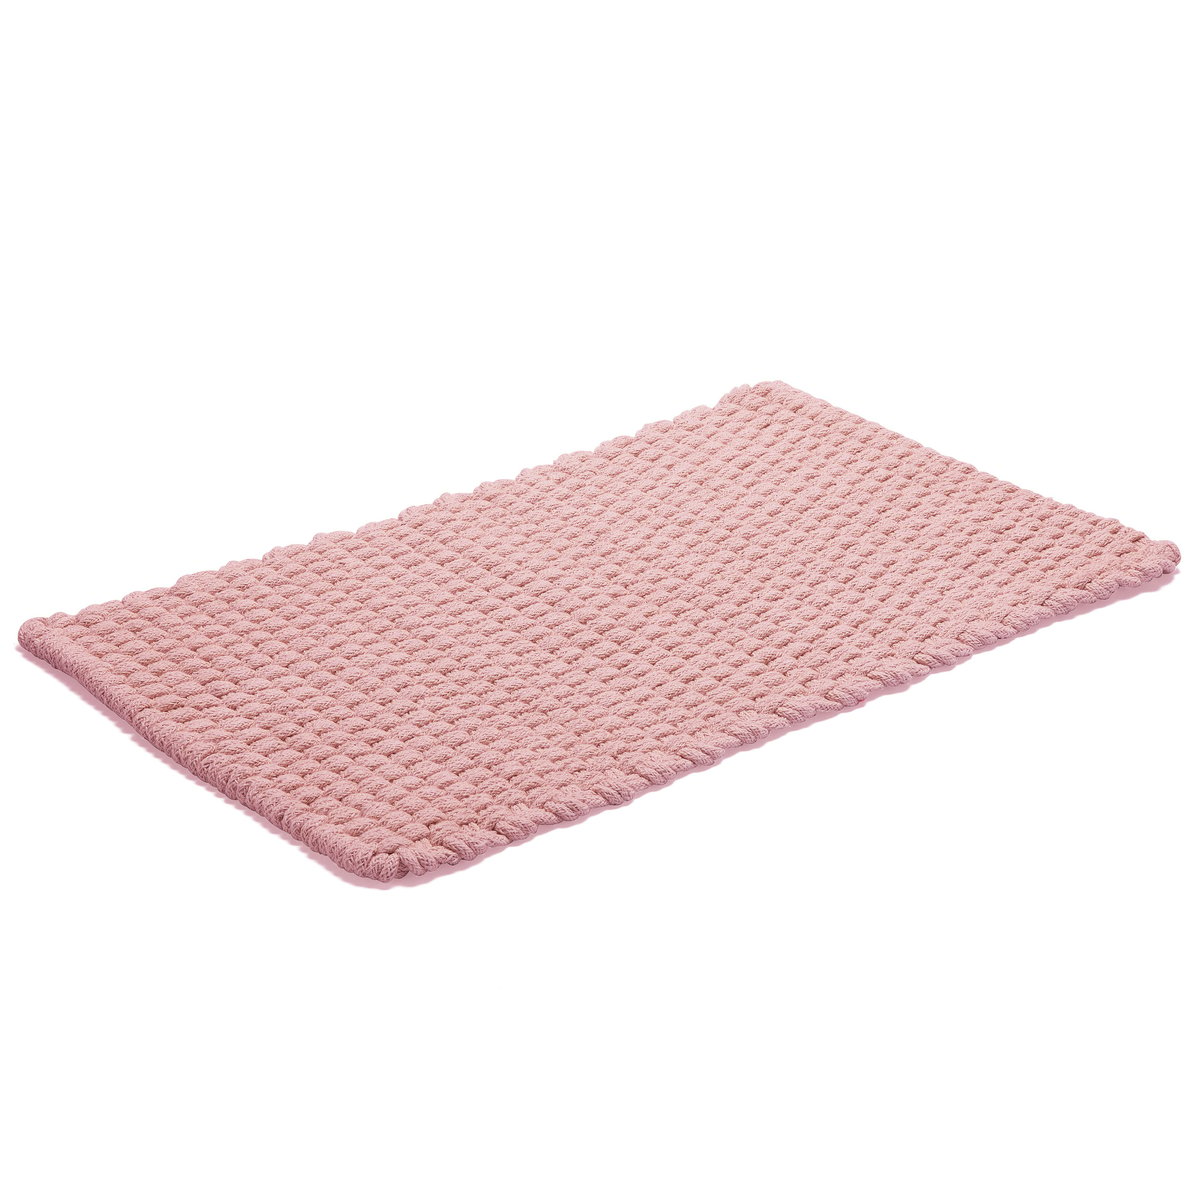 Bilde av ETOL Design Rope gulvteppe 50x80 cm Dusty pink